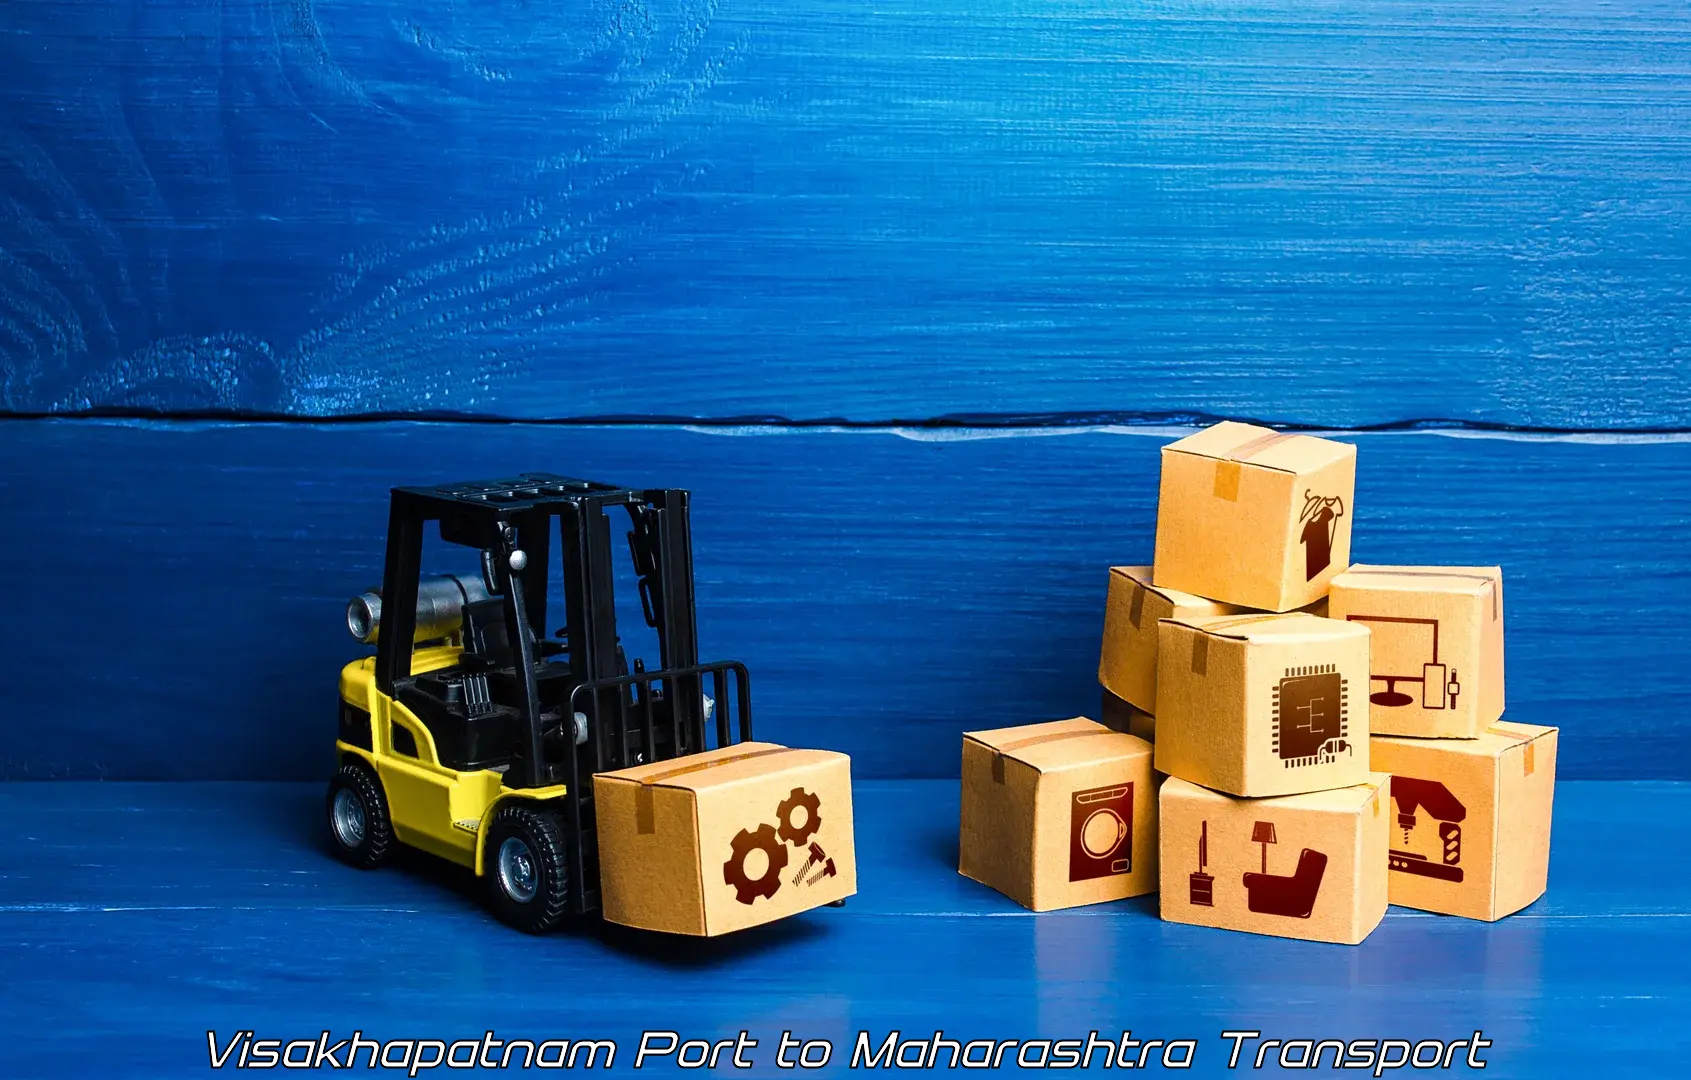 Furniture transport service Visakhapatnam Port to Dadar